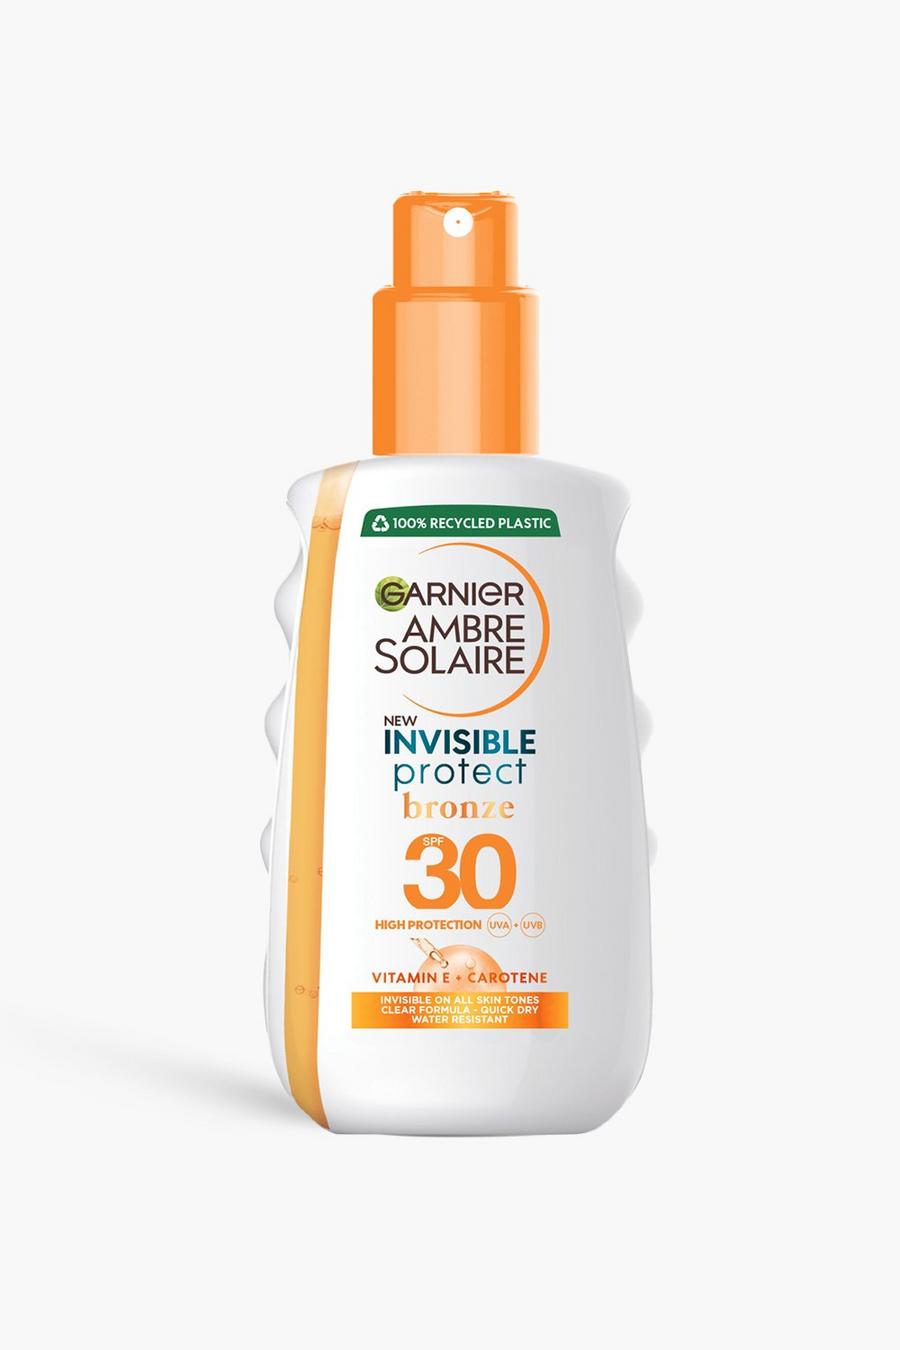 Garnier Ambre Solaire - Crema solare spray trasparente Invisible Protect Bronze con protezione SPF 30 dai raggi UVA & UVB, 200ml (RISPARMI IL 32%), White bianco